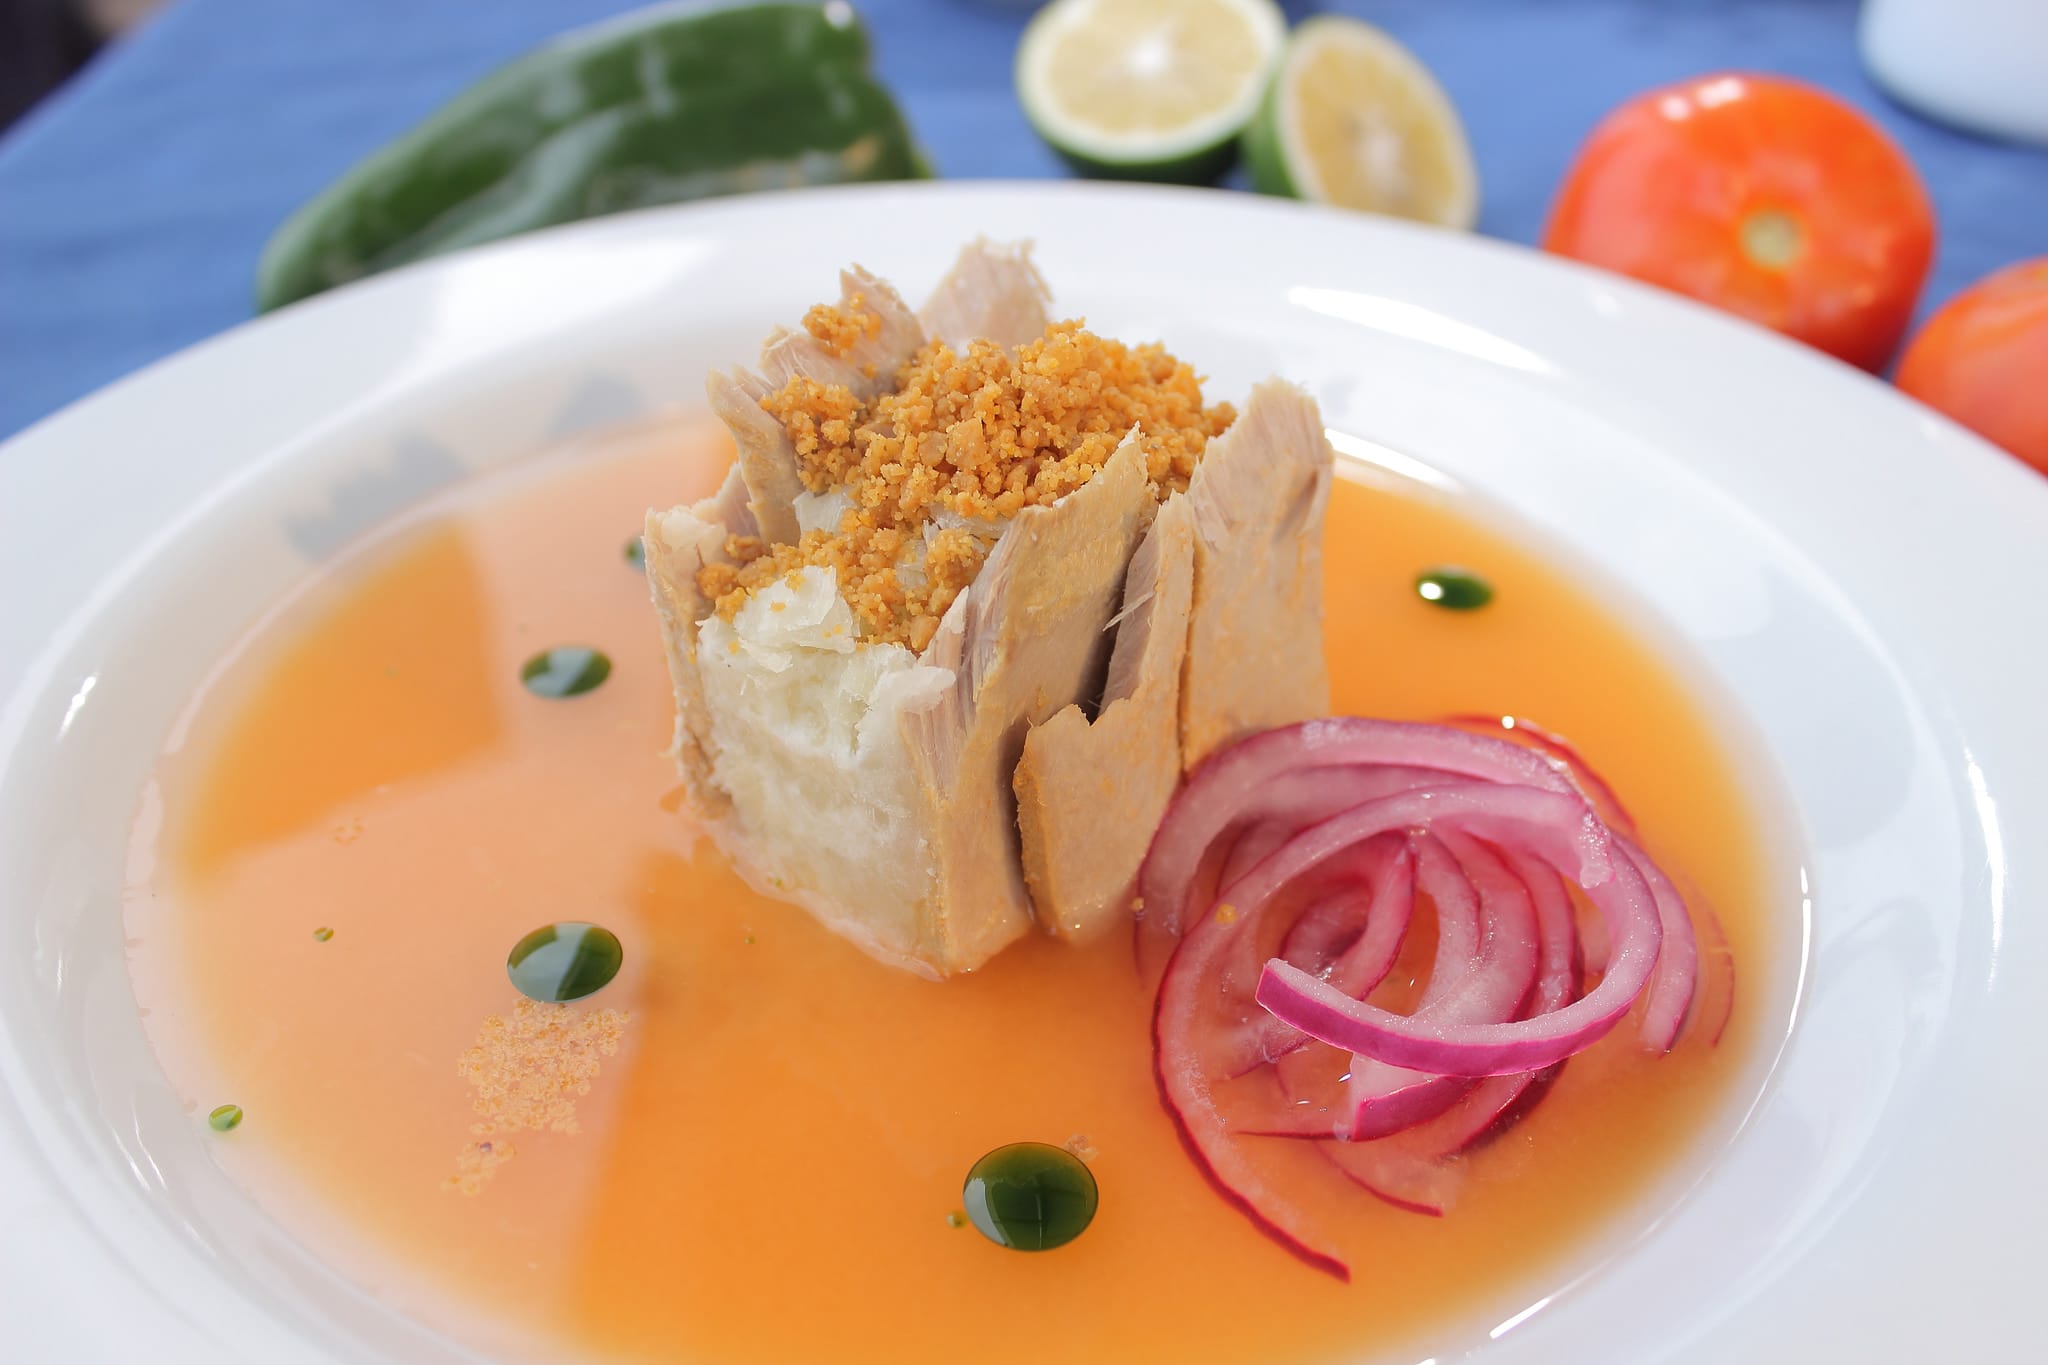 Food and Cuisine of Manta - Encebollado